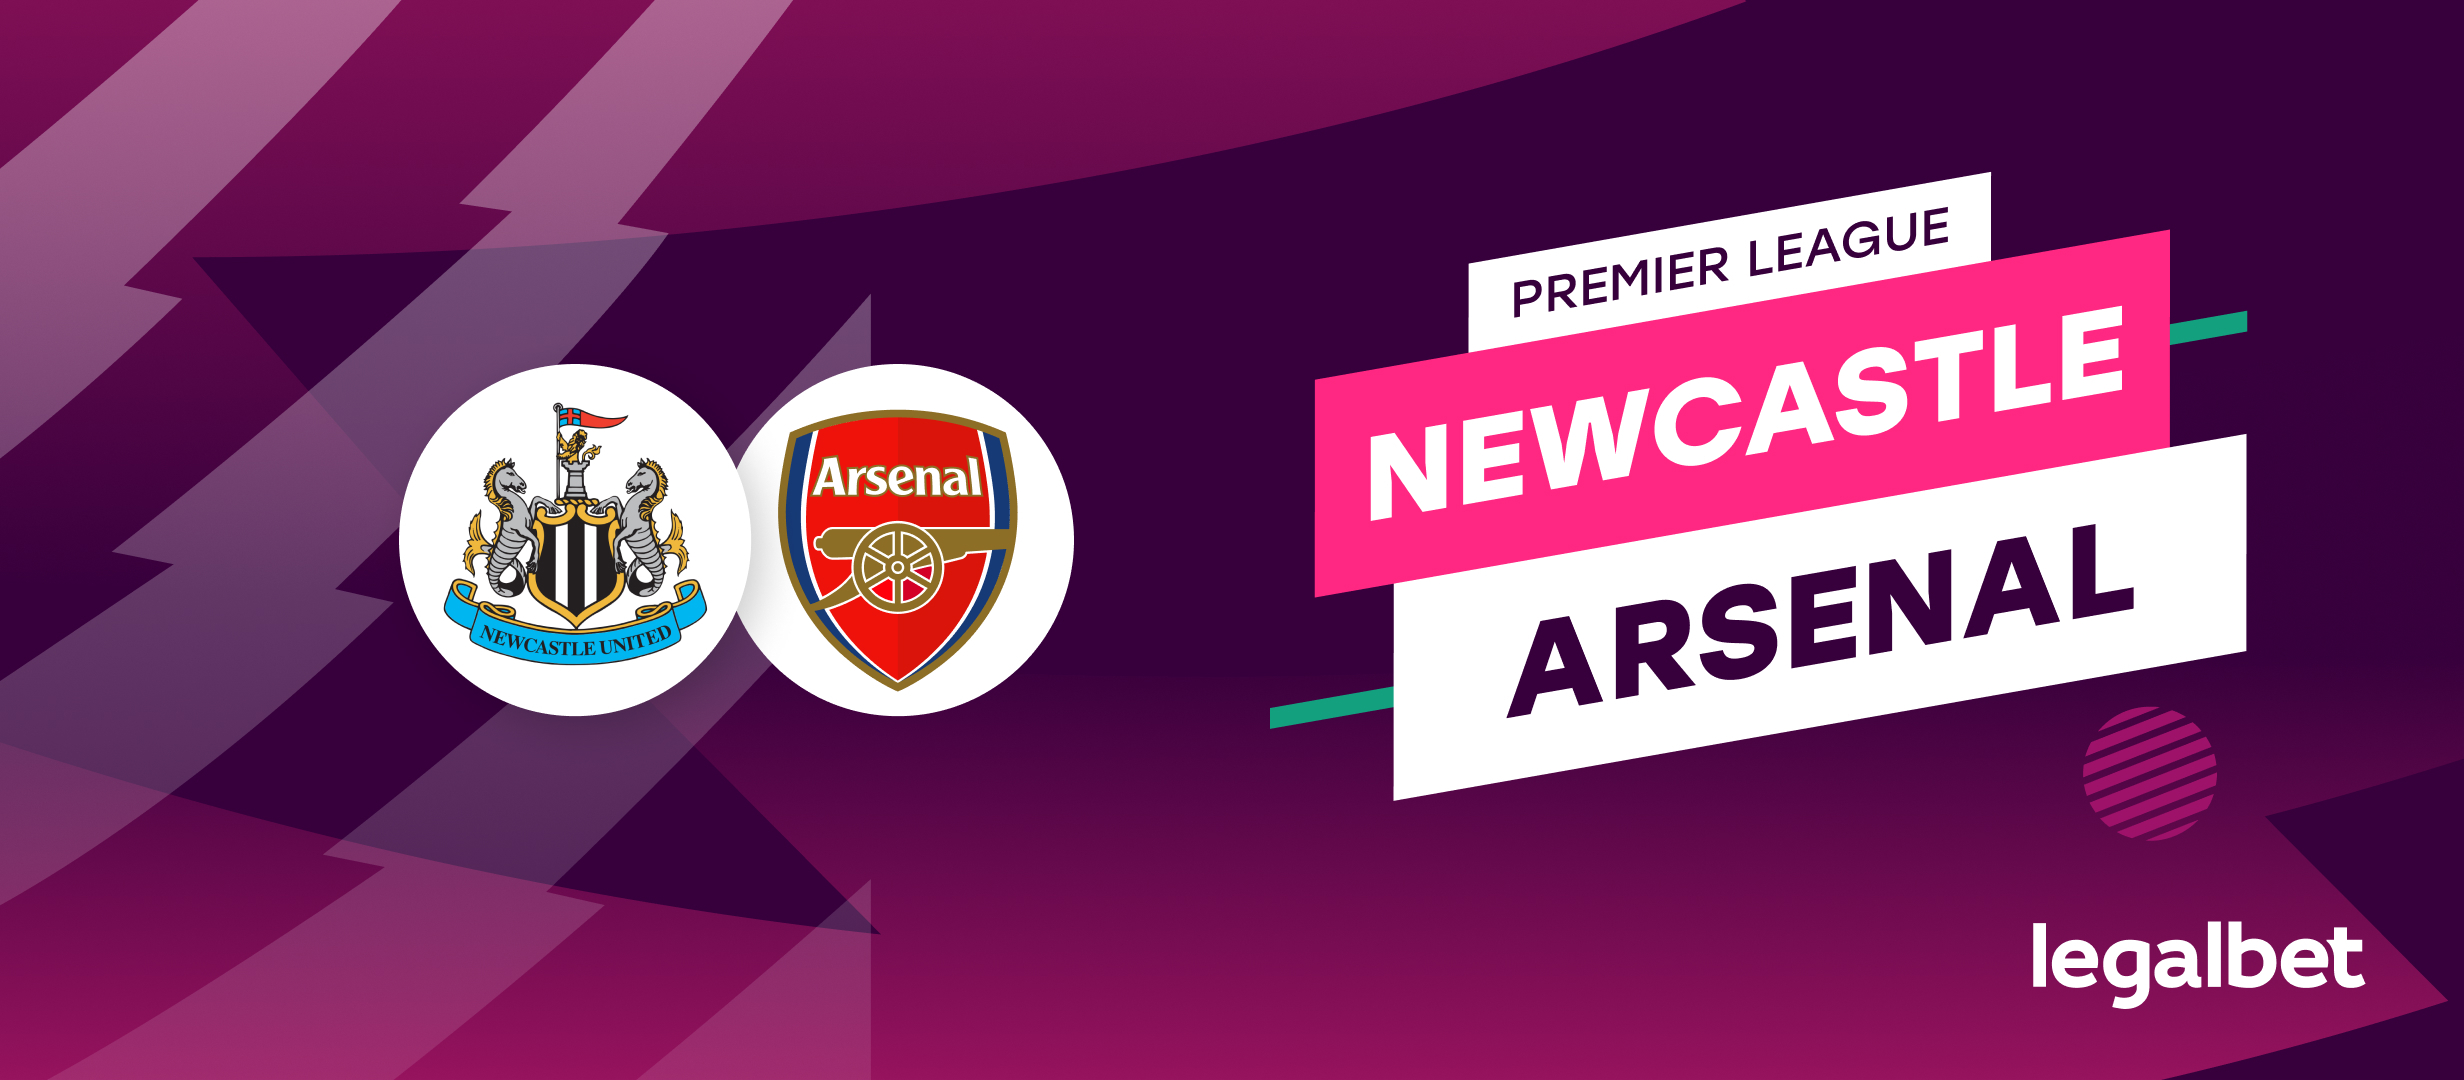 Newcastle - Arsenal - ponturi la pariuri Premier League